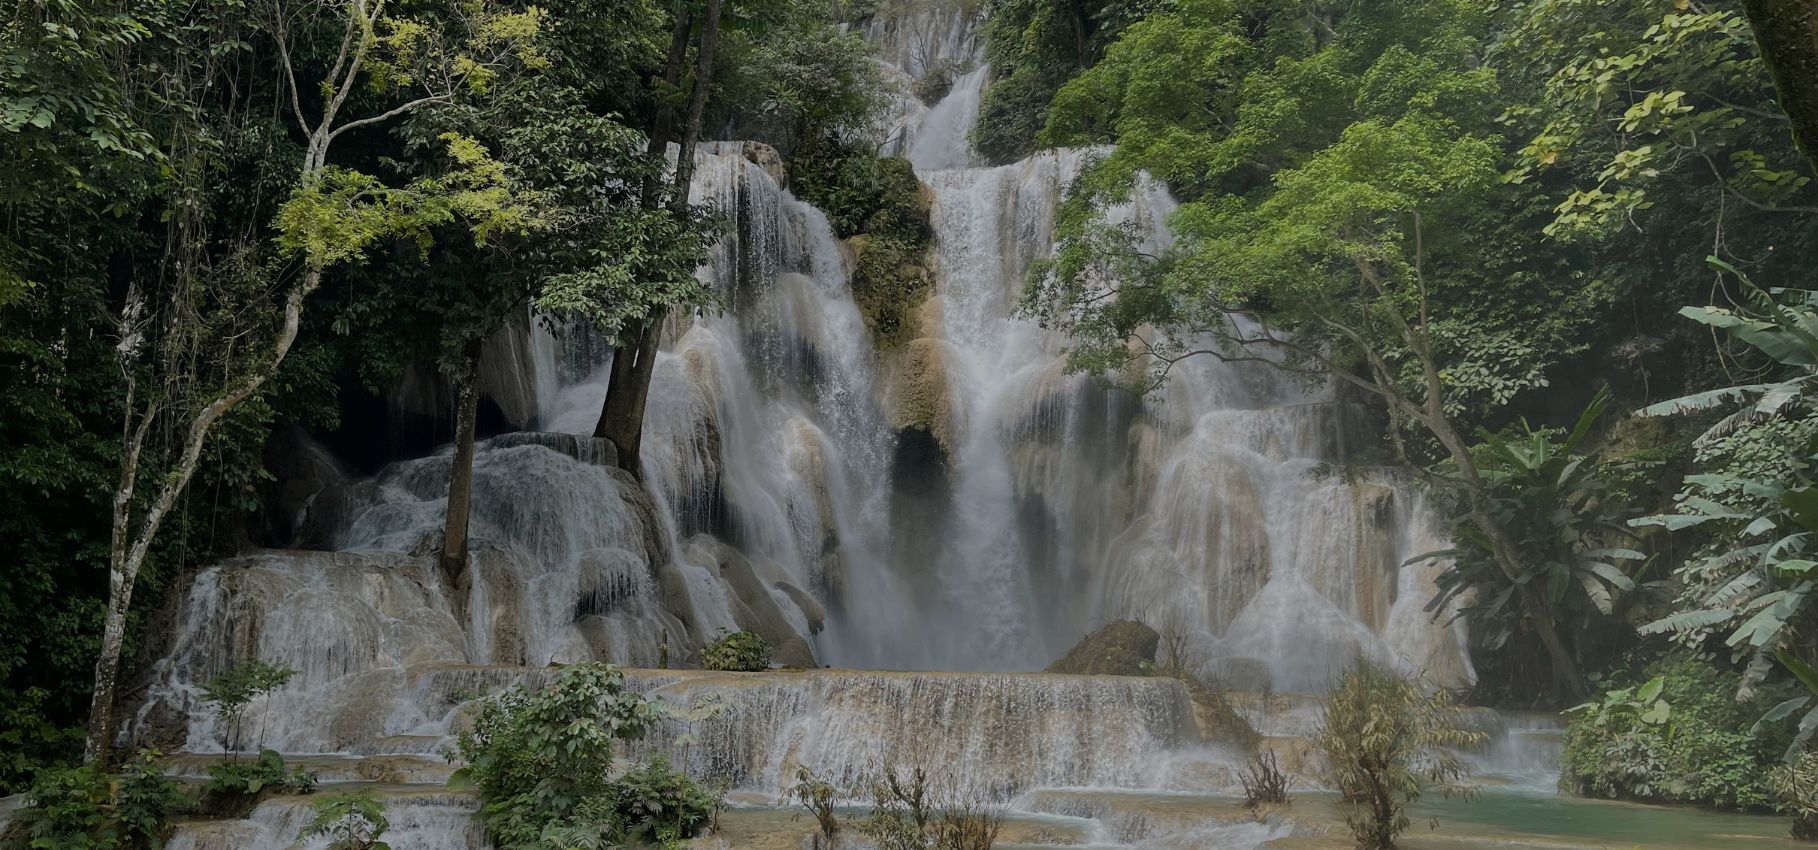 Visiting Kuangsi Waterfalls, Laos